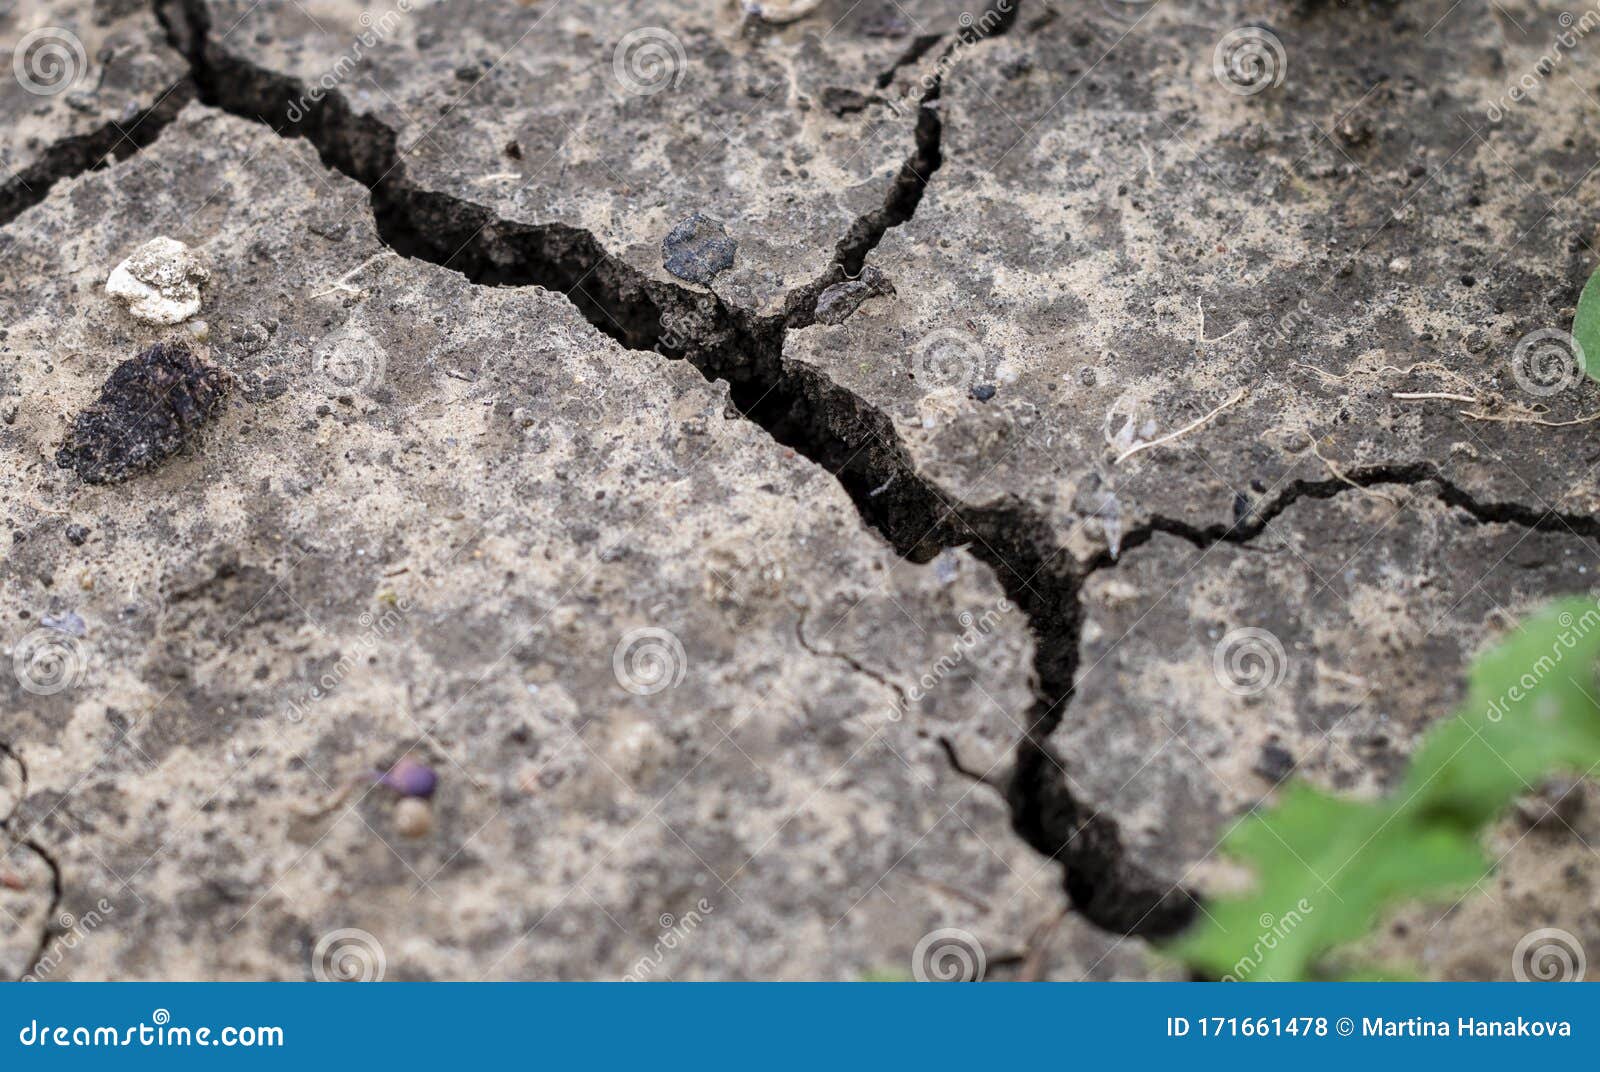 干燥由于污染和全球变暖 干地裂开干燥土壤中生长的小绿植物库存照片 图片包括有灾害 天旱